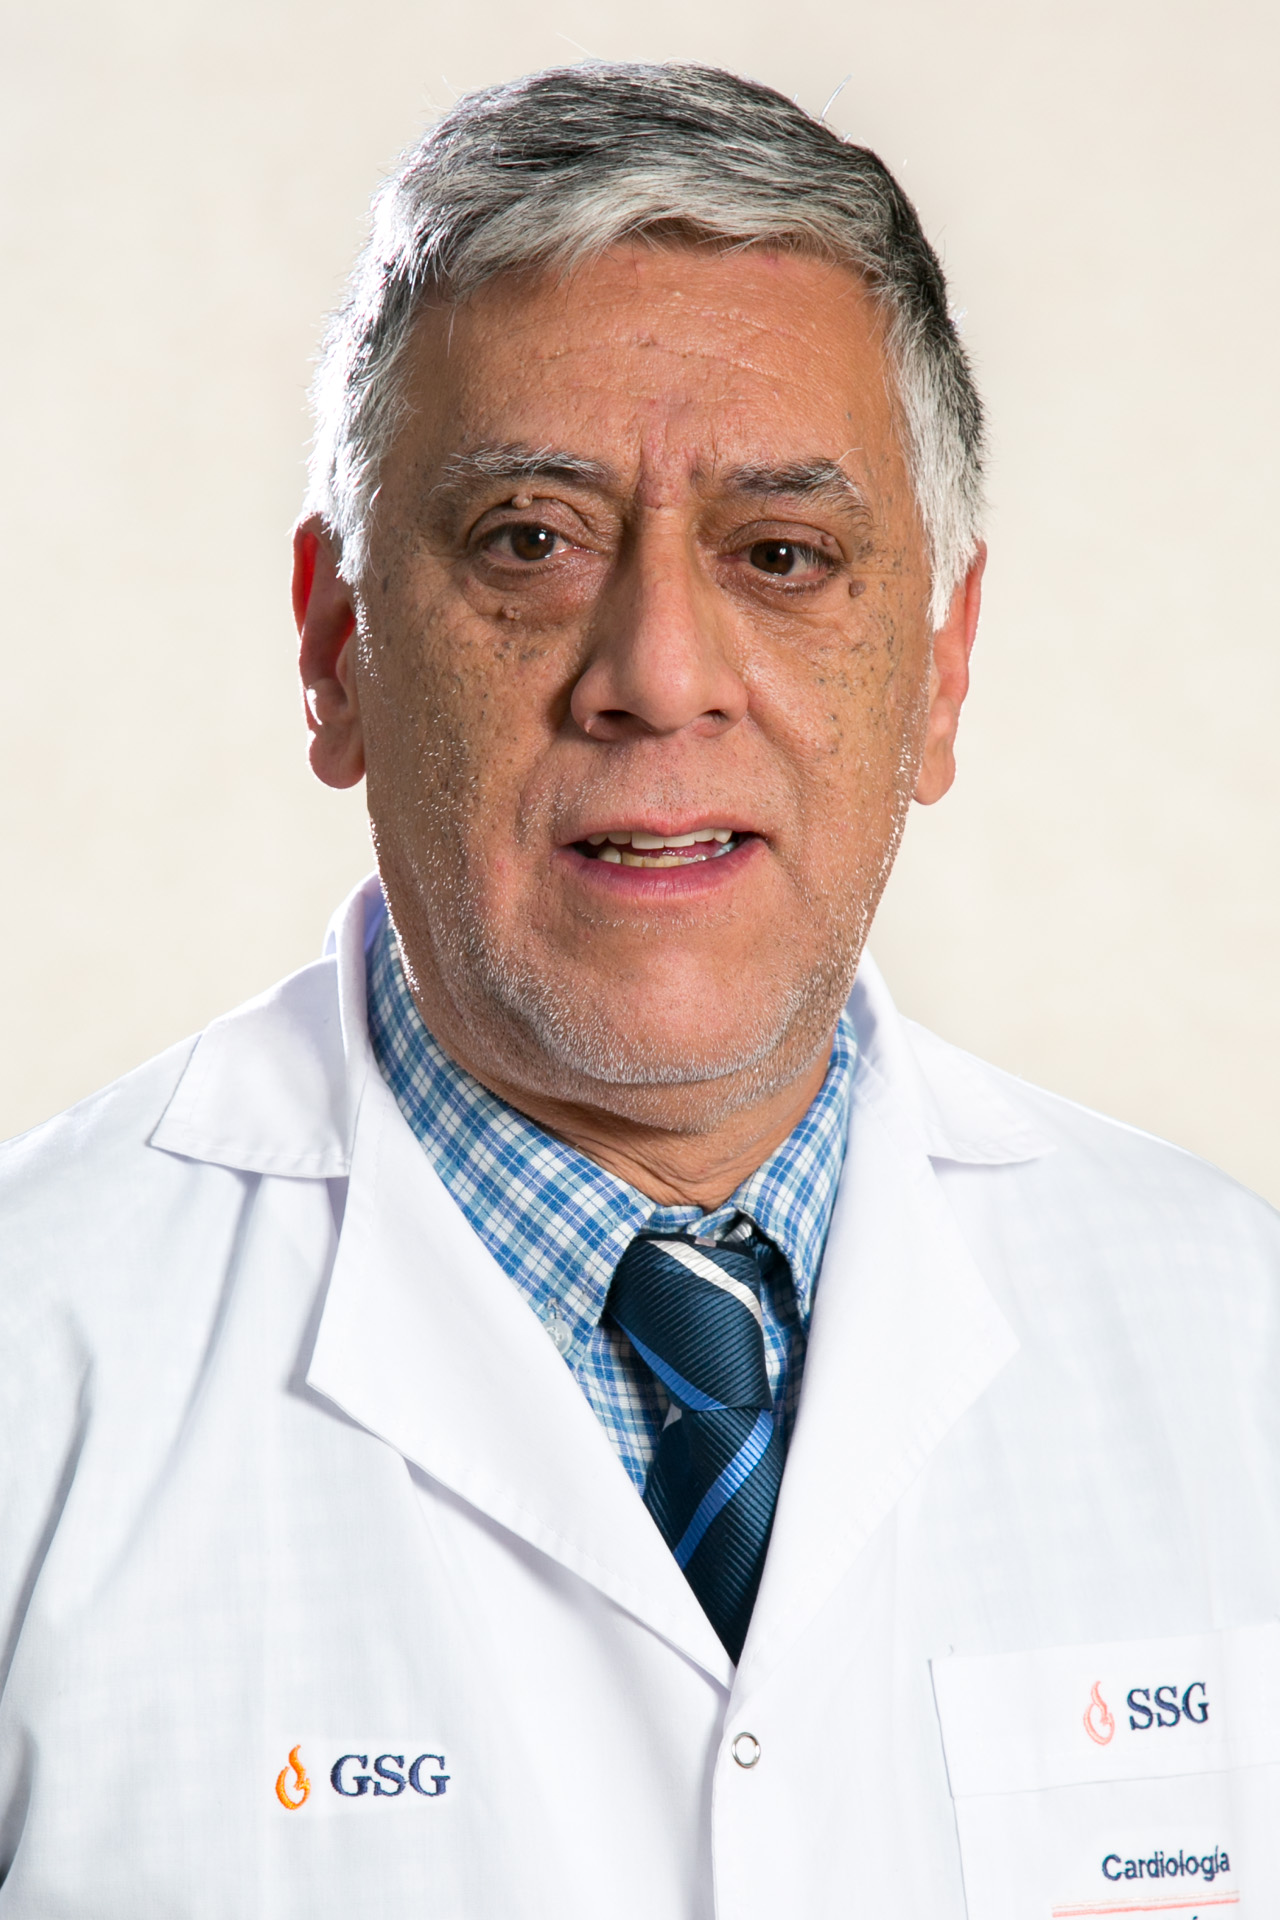 Dr. Lujan Osvaldo